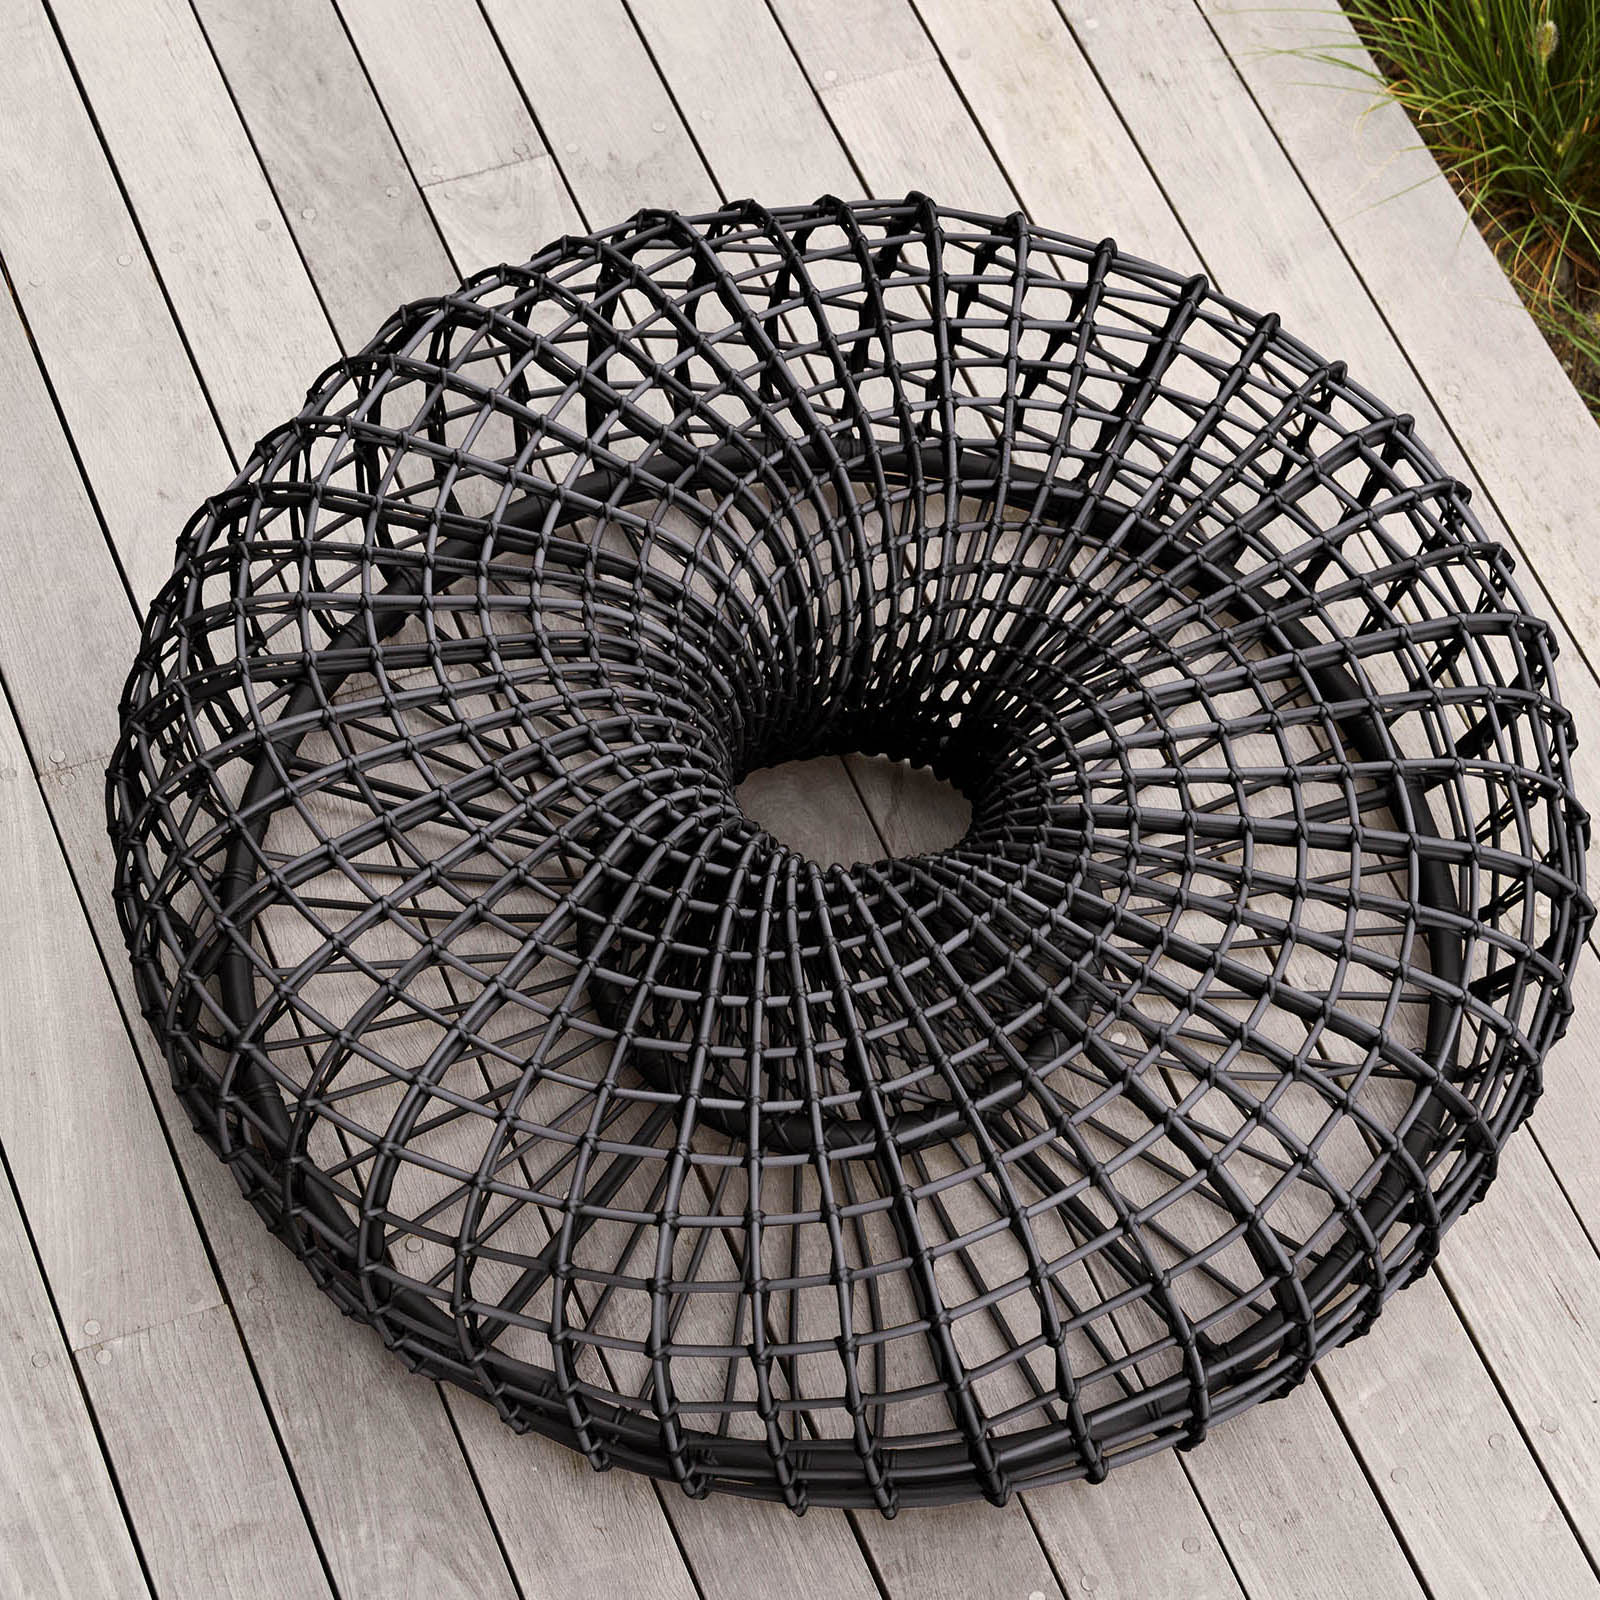 Nest Couchtisch oder Hocker groß Durchmesser 130 cm aus Cane-line Weave in Natural